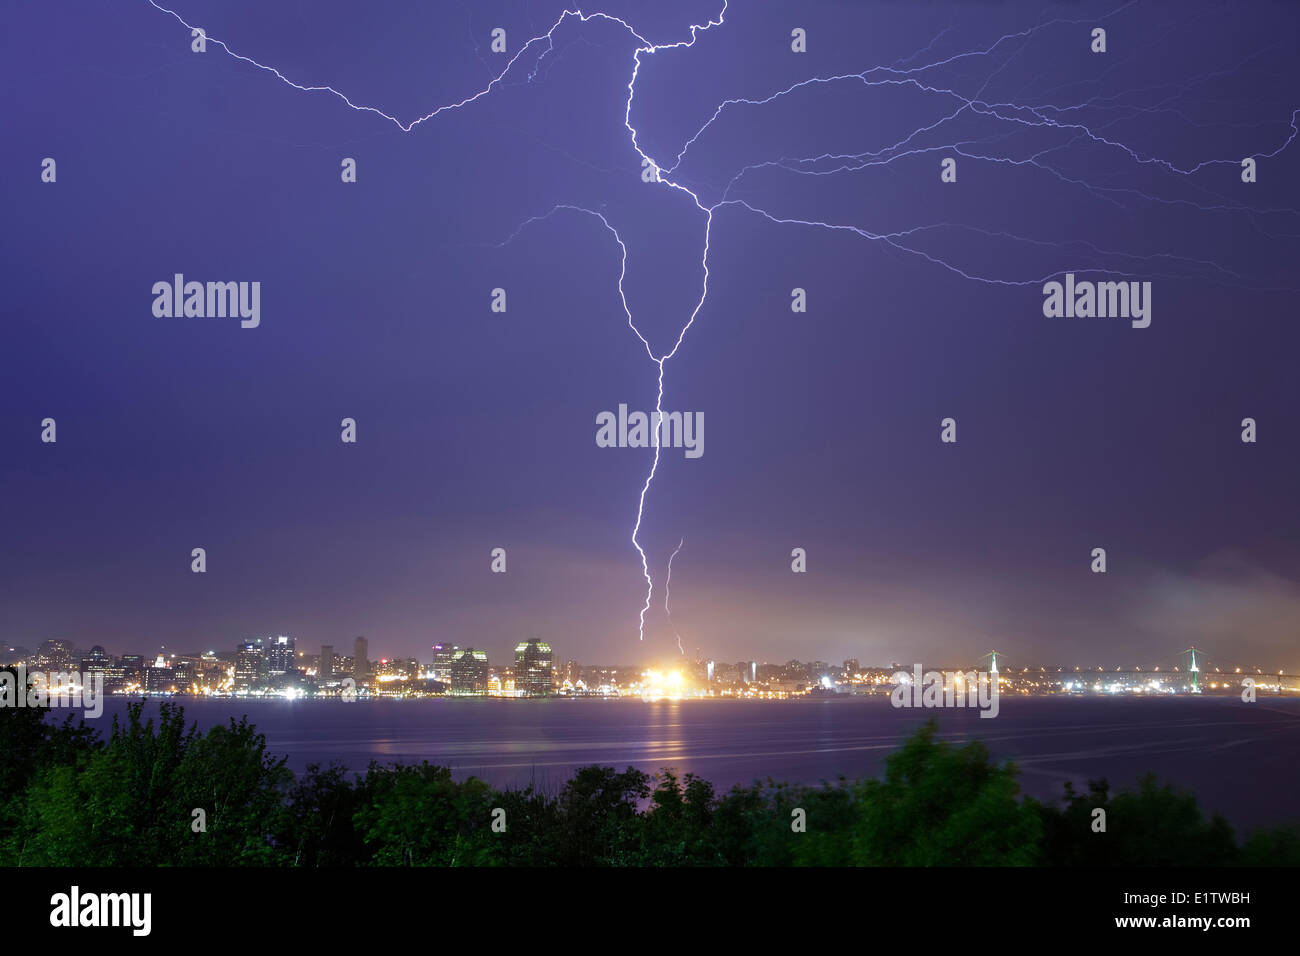 Un perno lightning llena el cielo sobre el puerto de Halifax y golpea una torre de comunicaciones en Halifax, Nova Scotia Foto de stock